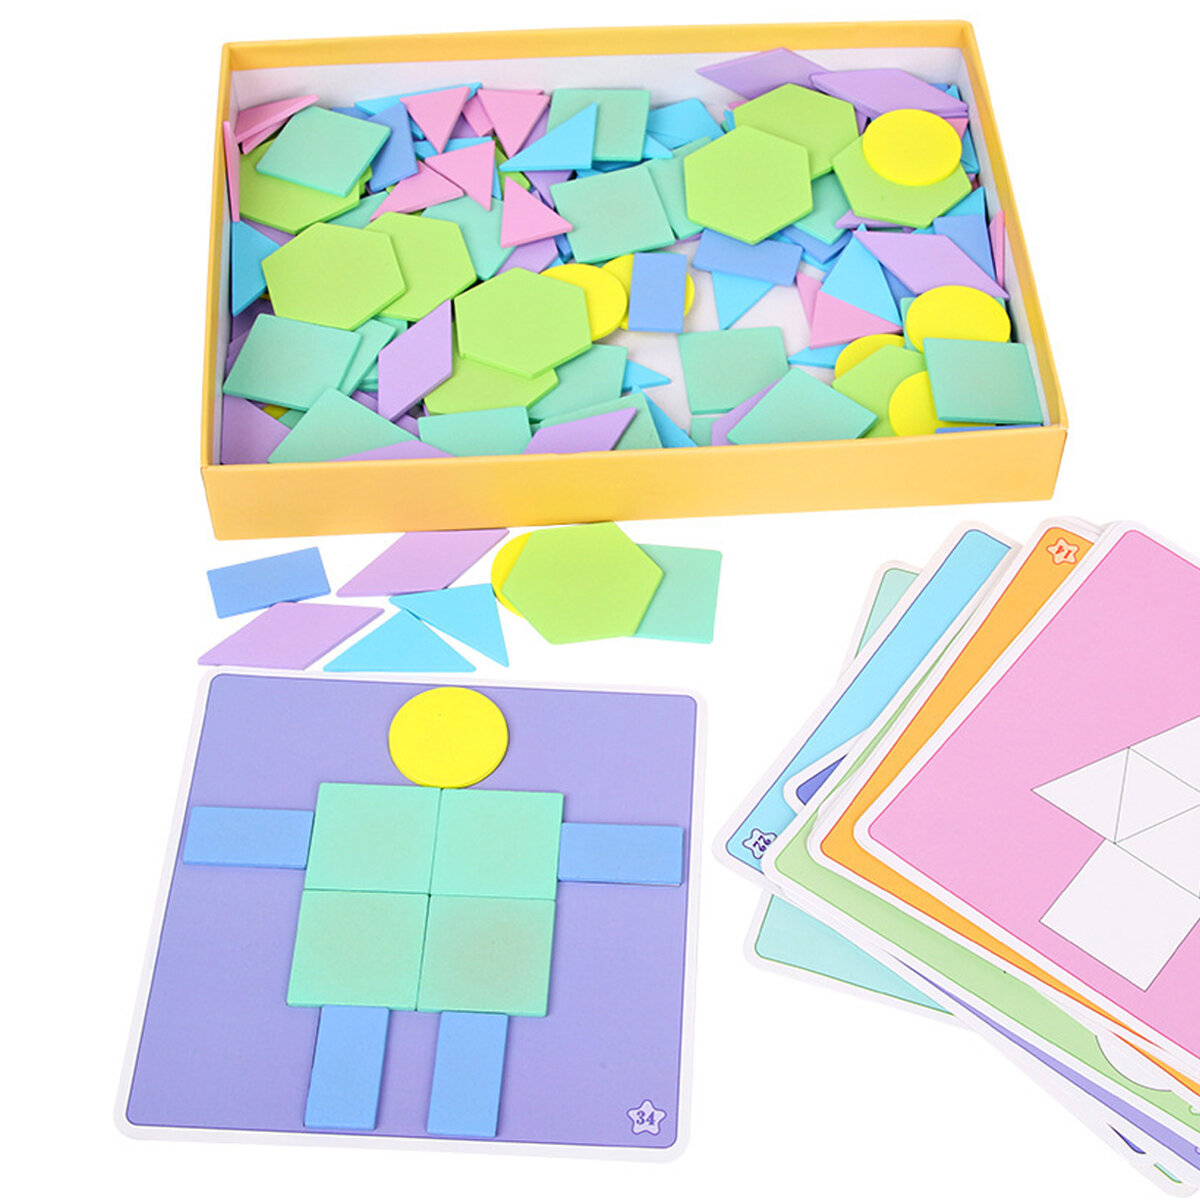 190 stks / set Creatieve Vorm DIY Houten Puzzels Geometrische Vorm Patroon Colorful Blokken Educatie